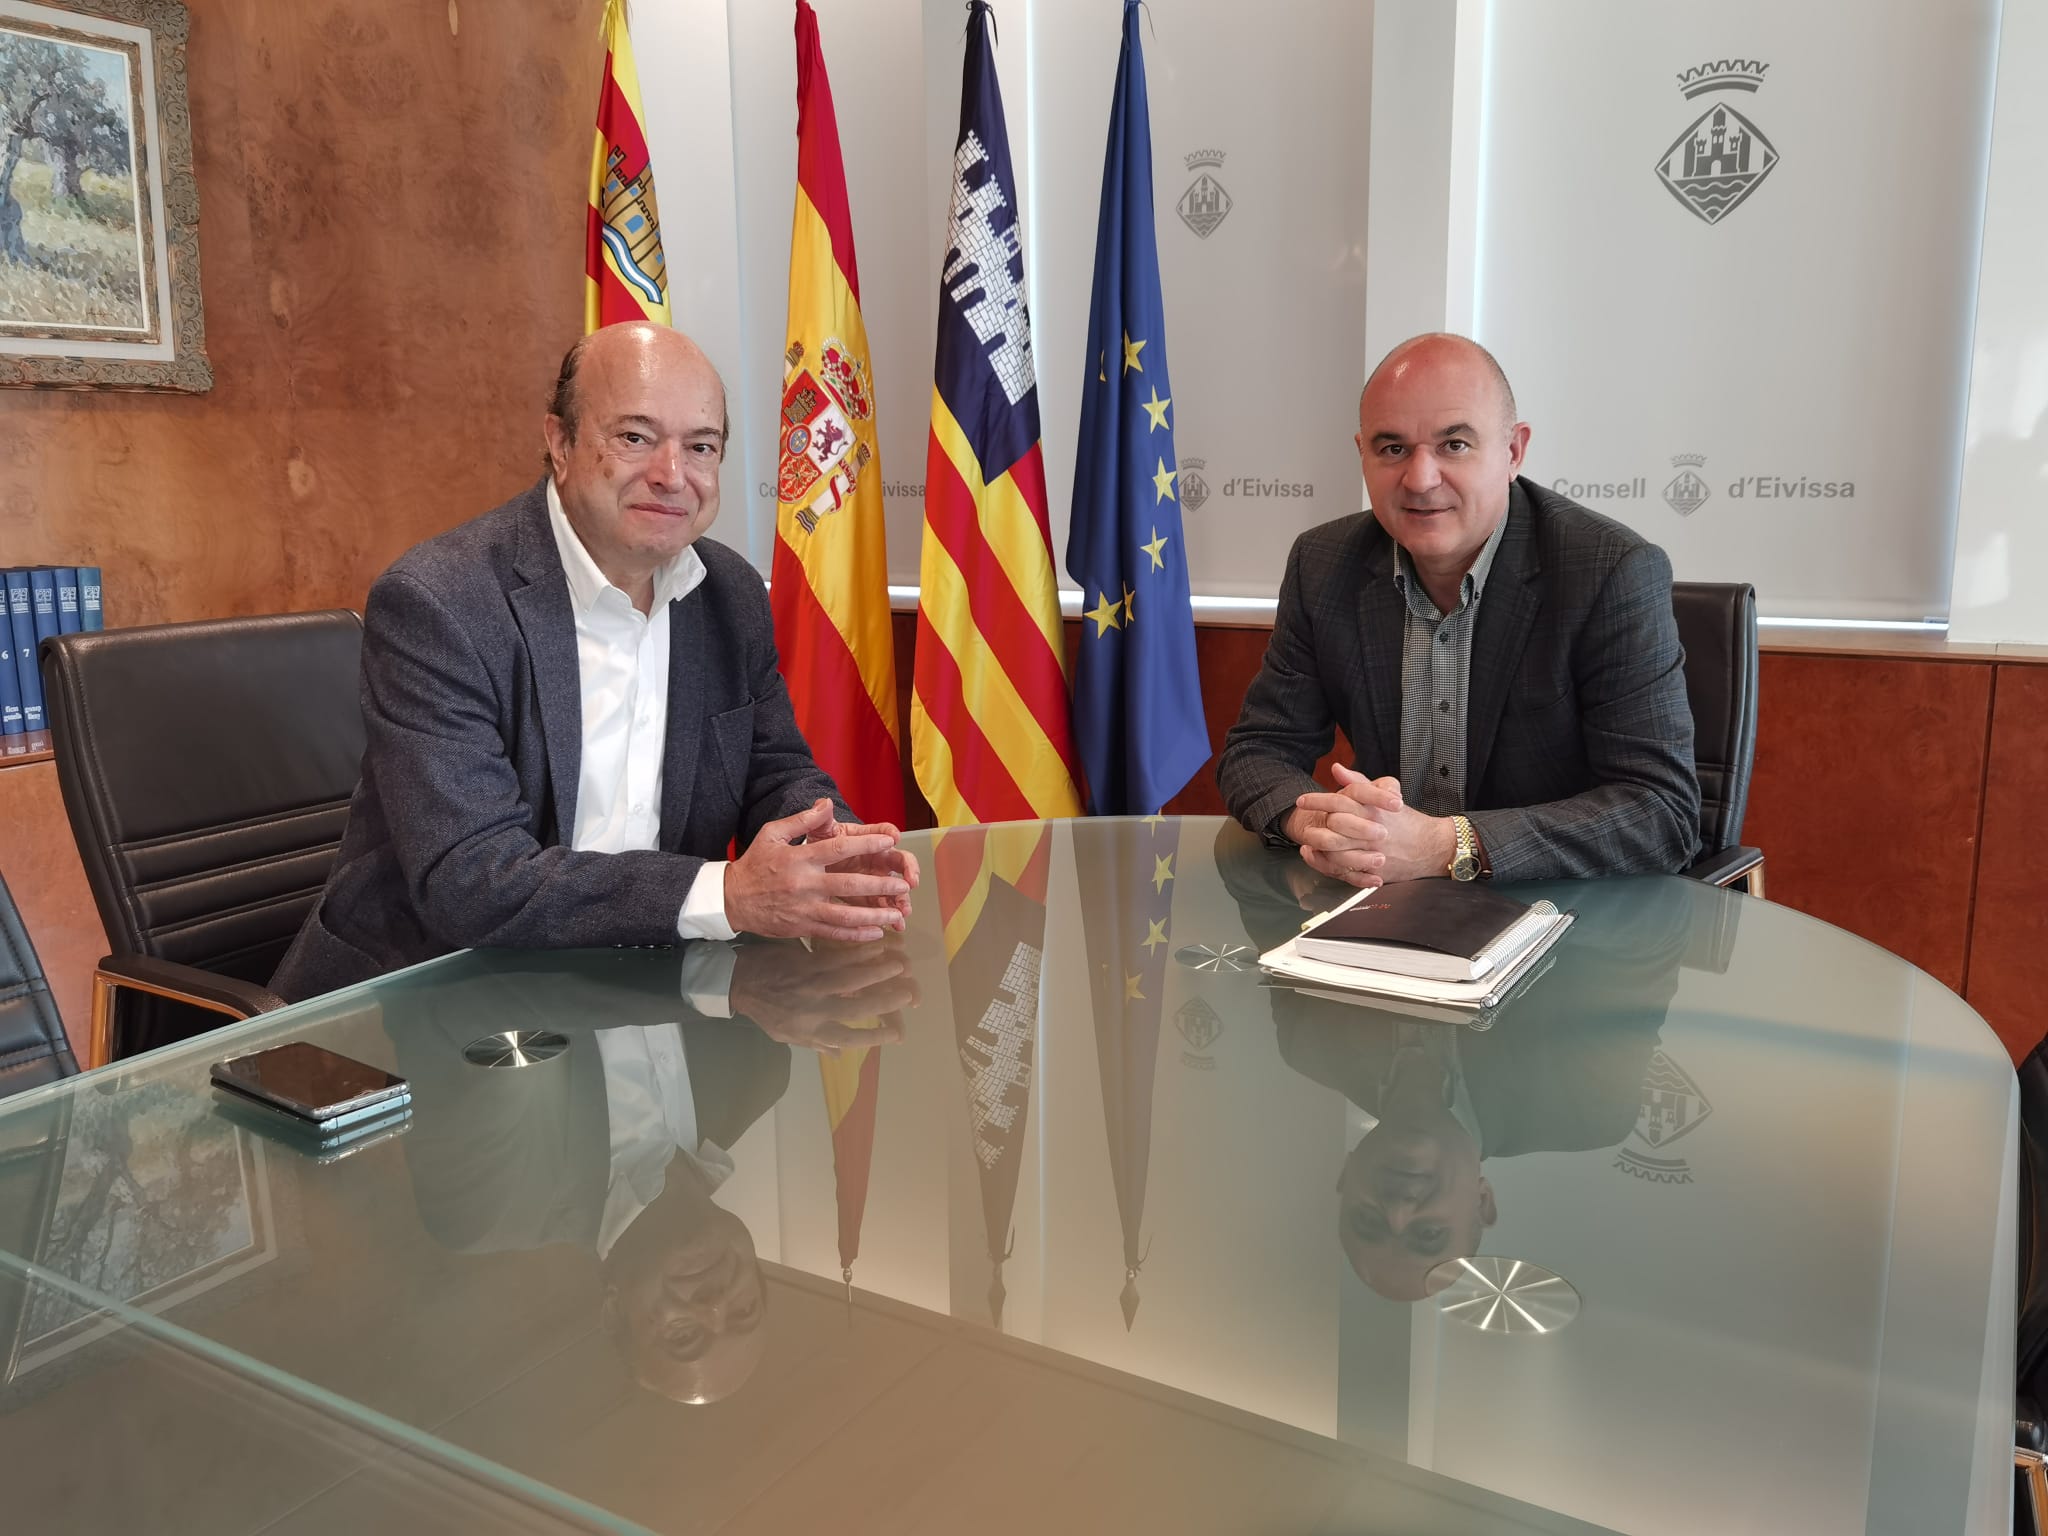 El Consell de Eivissa, el Ayuntamiento de Eivissa y la Autoridad Portuaria coordinarán sus servicios para ofrecer un mejor servicio a la llegada de cruceros